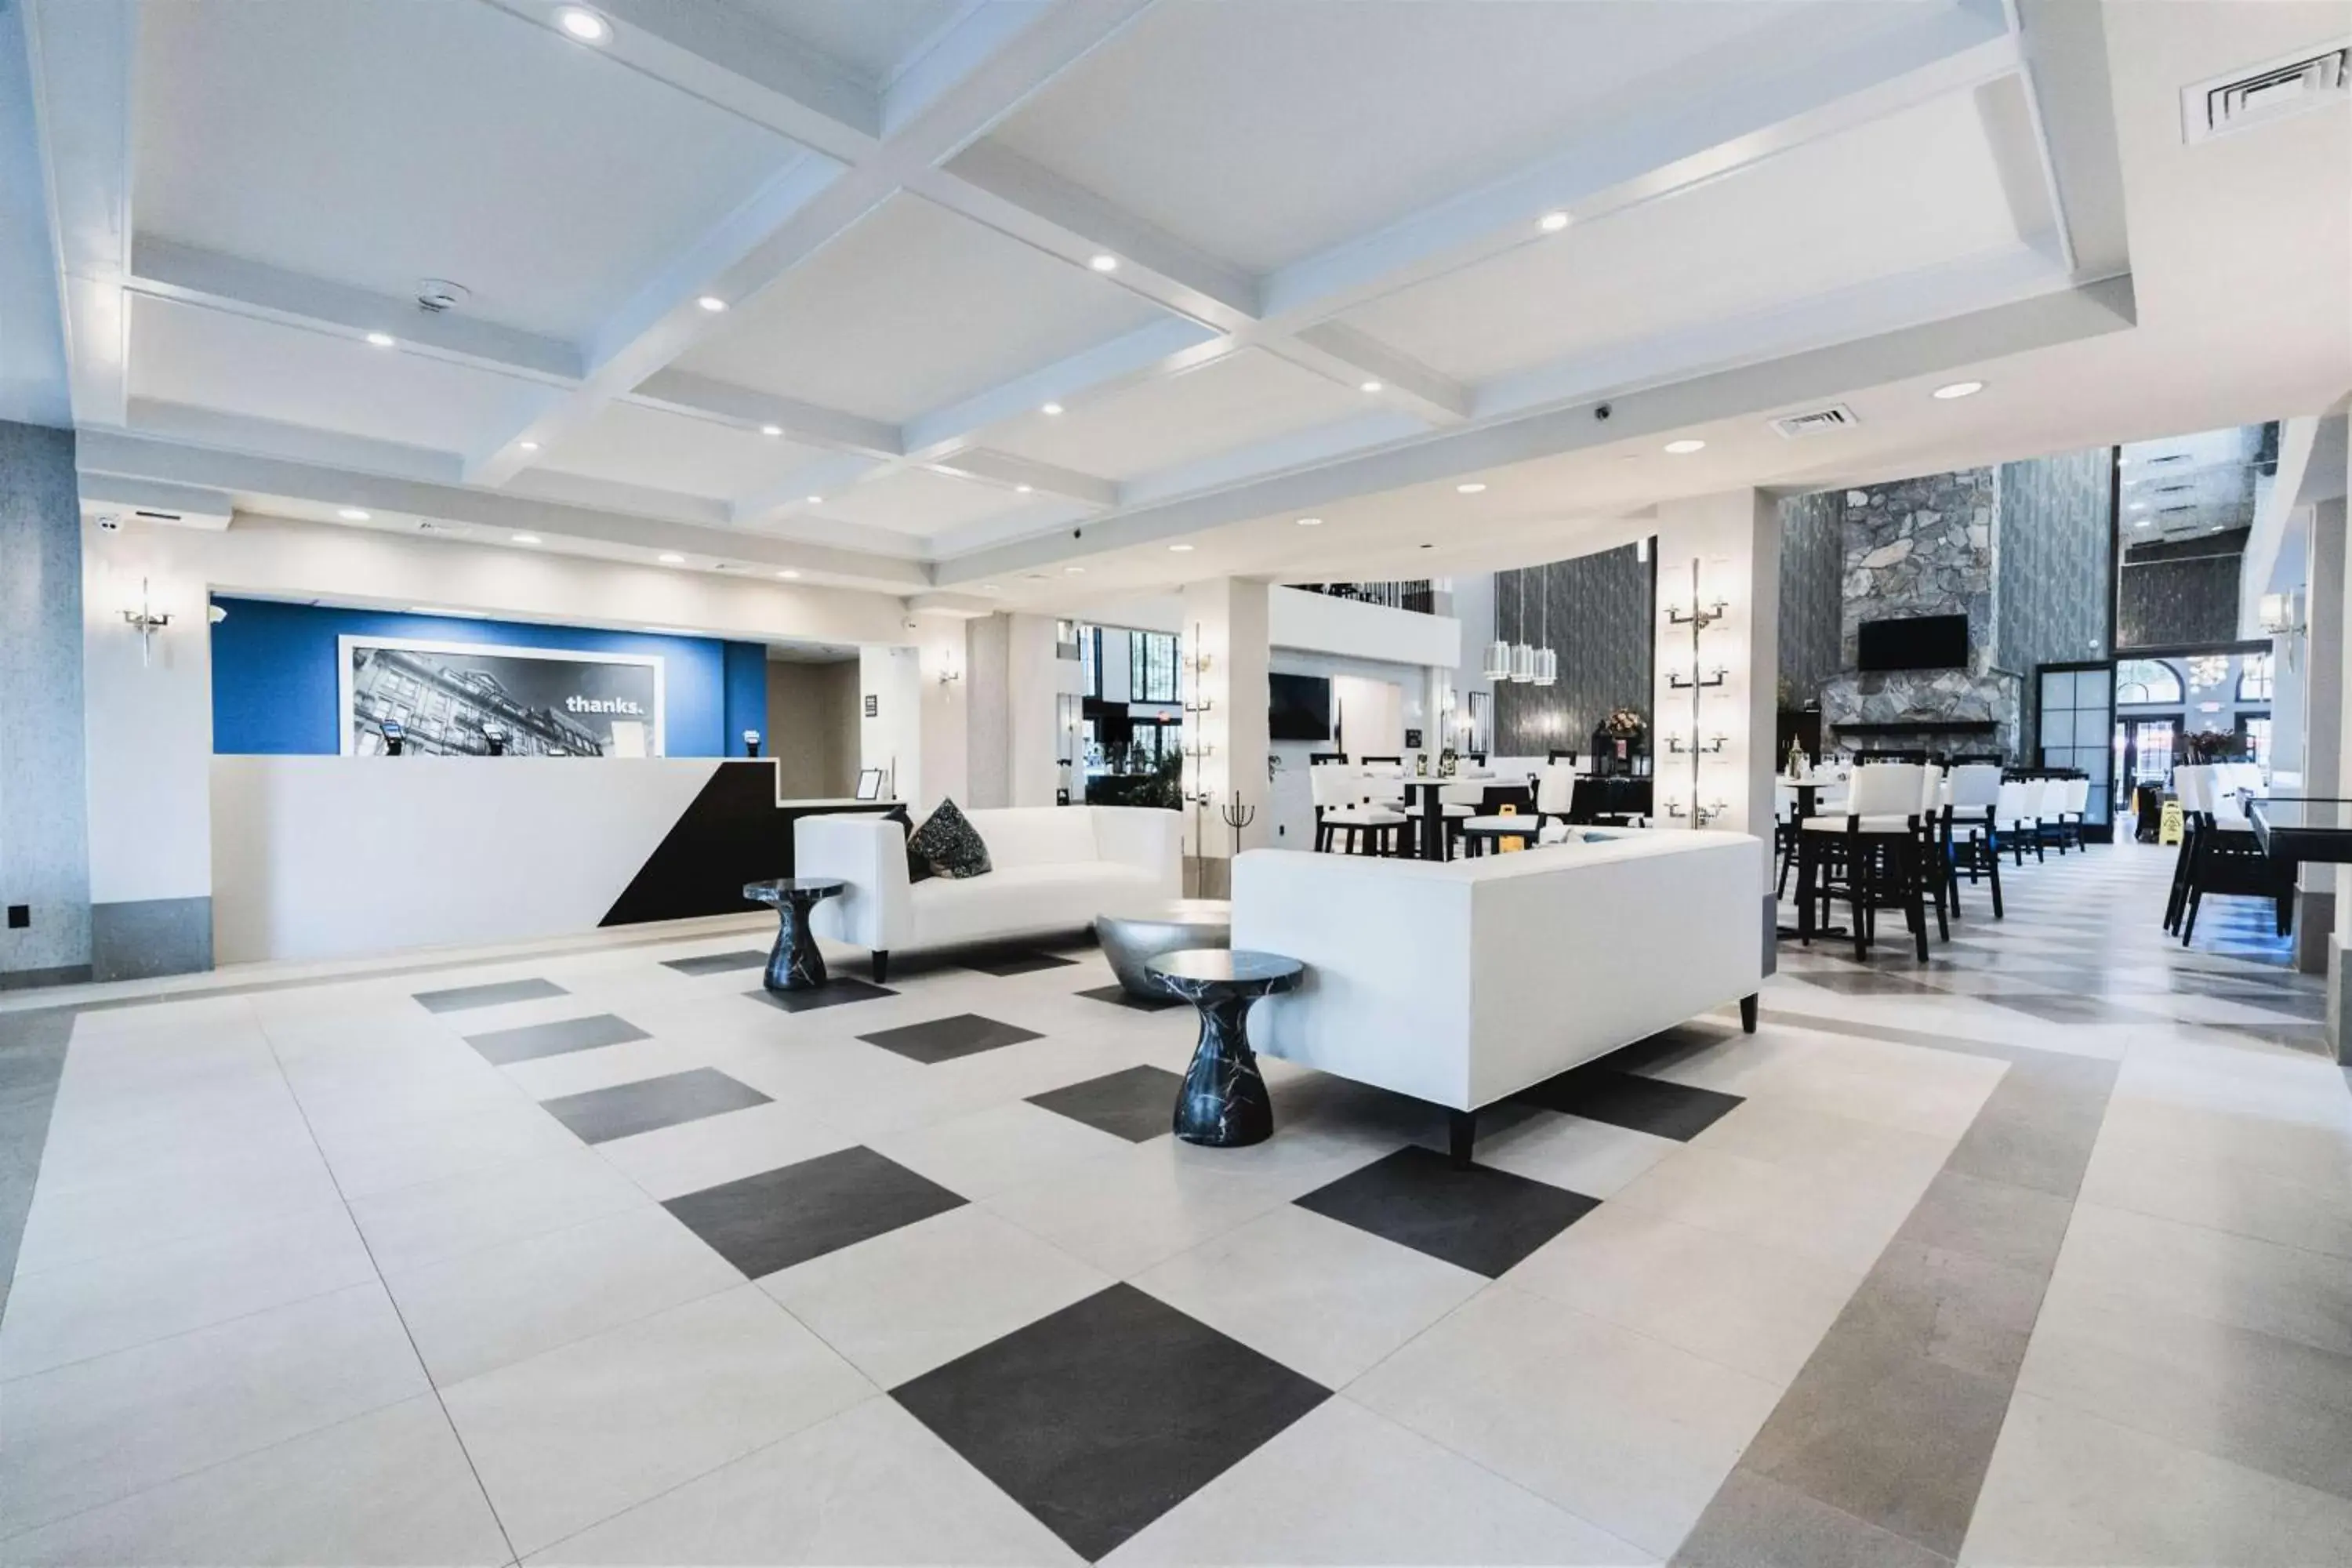 Lobby or reception, Lobby/Reception in Hampton Inn & Suites Fairfield